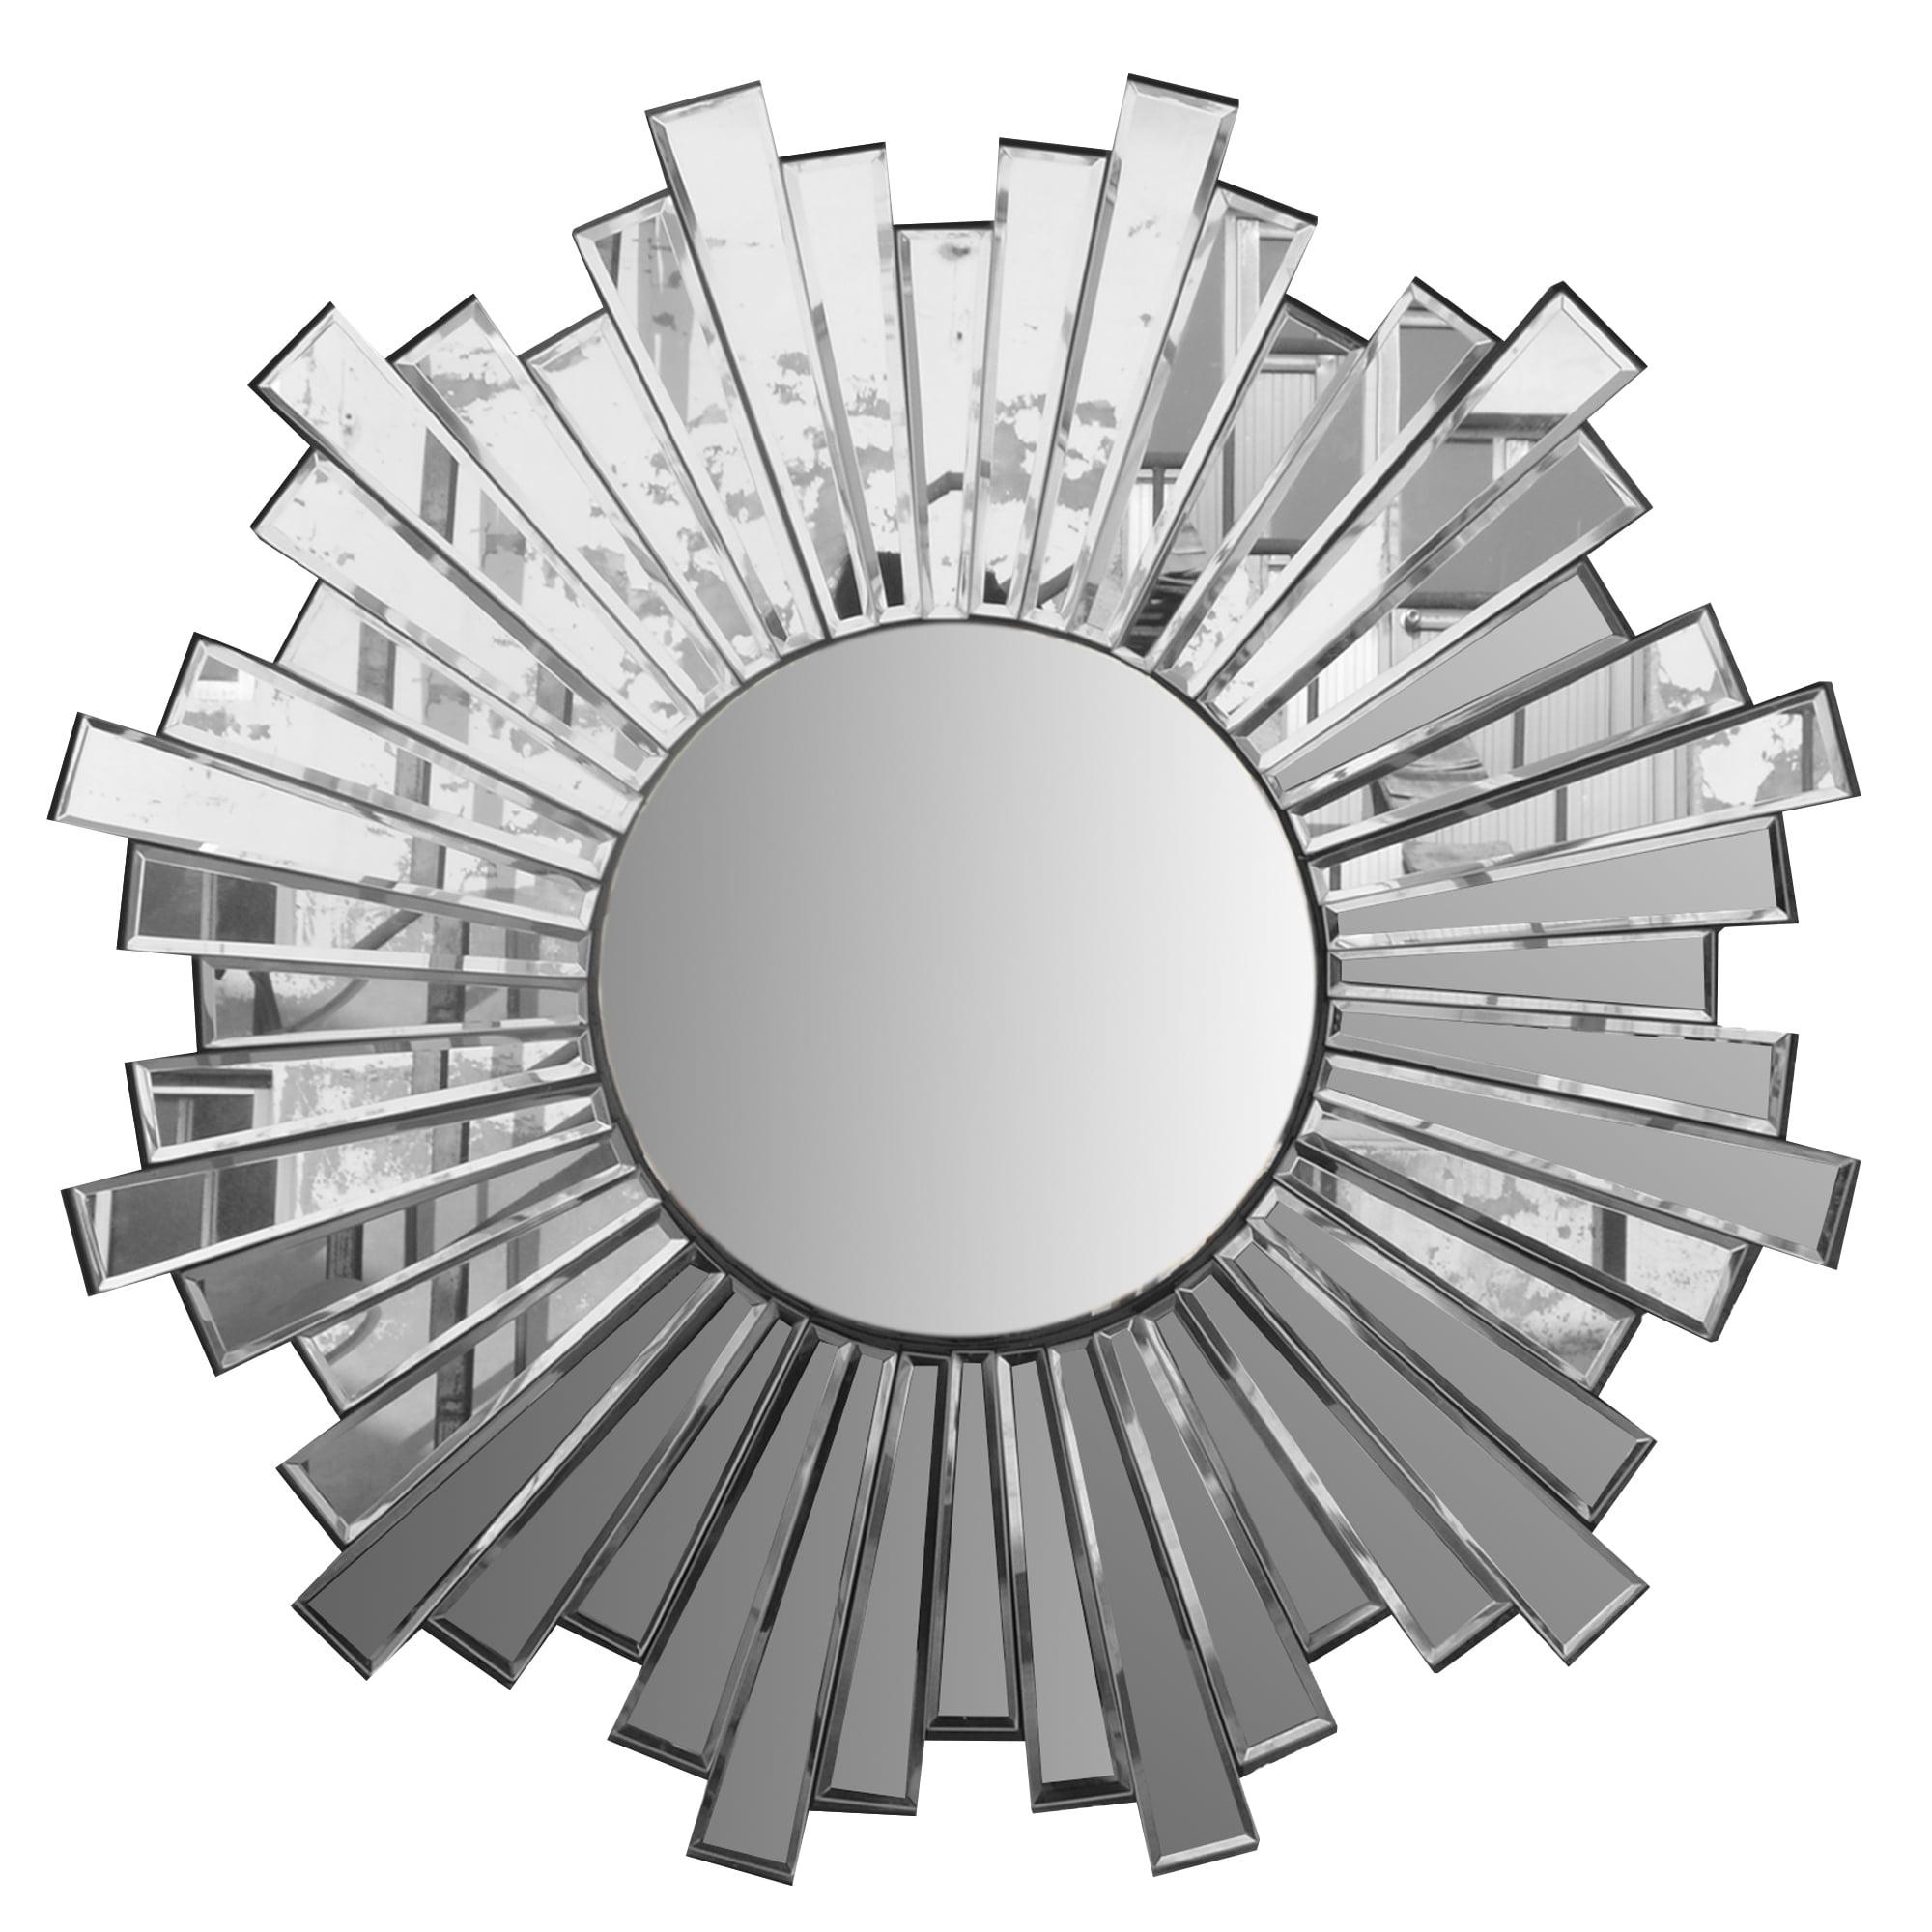 28" Round Silver Sunburst Design Floating Wall Mirror